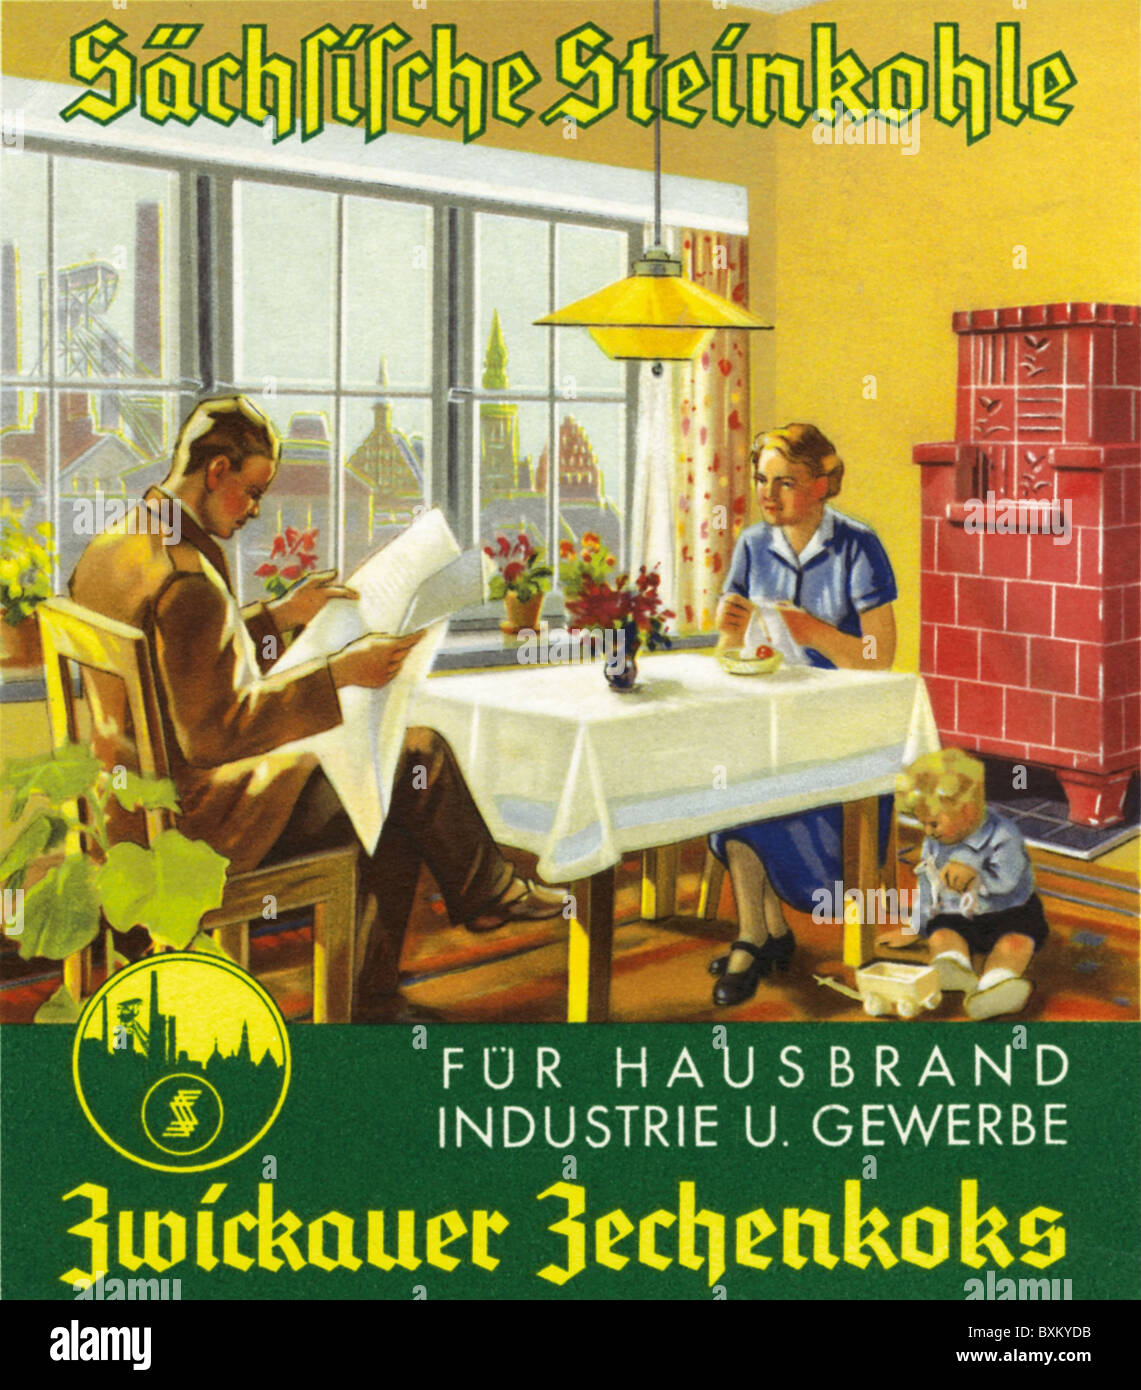 Pubblicità, società di carbone, Zwickau Zechenkoks, famiglia con stufa in maiolica, Germania, 1938, diritti aggiuntivi-clearences-non disponibile Foto Stock